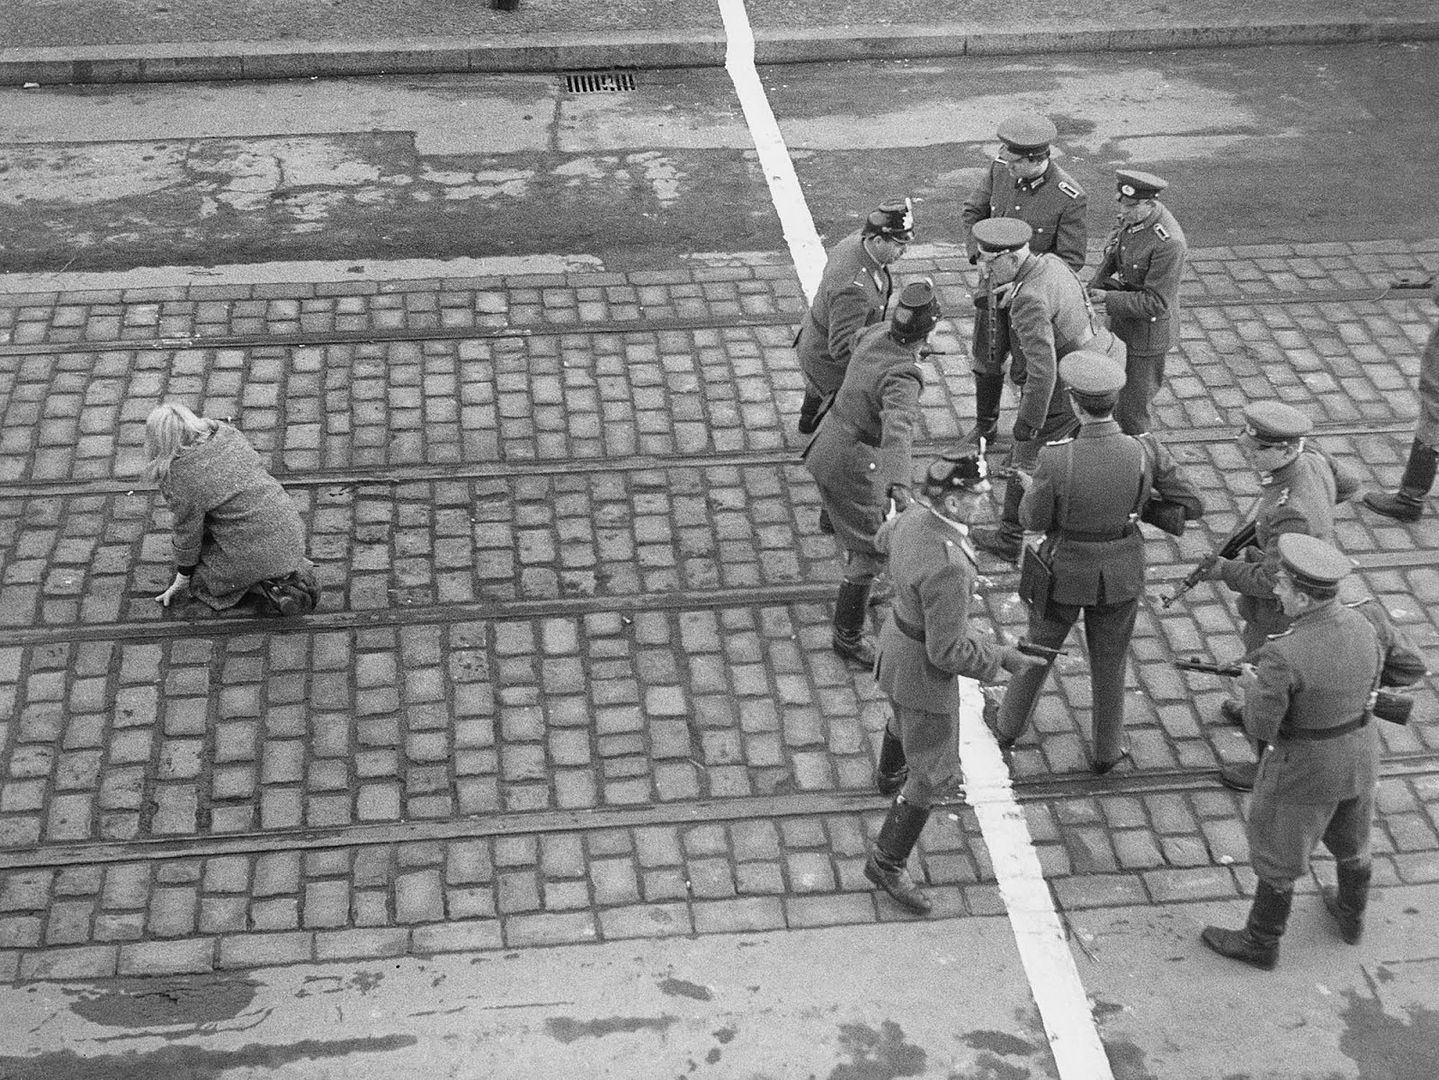 west_berlin_1955_woman_escape_zps3arl3tt8.jpg